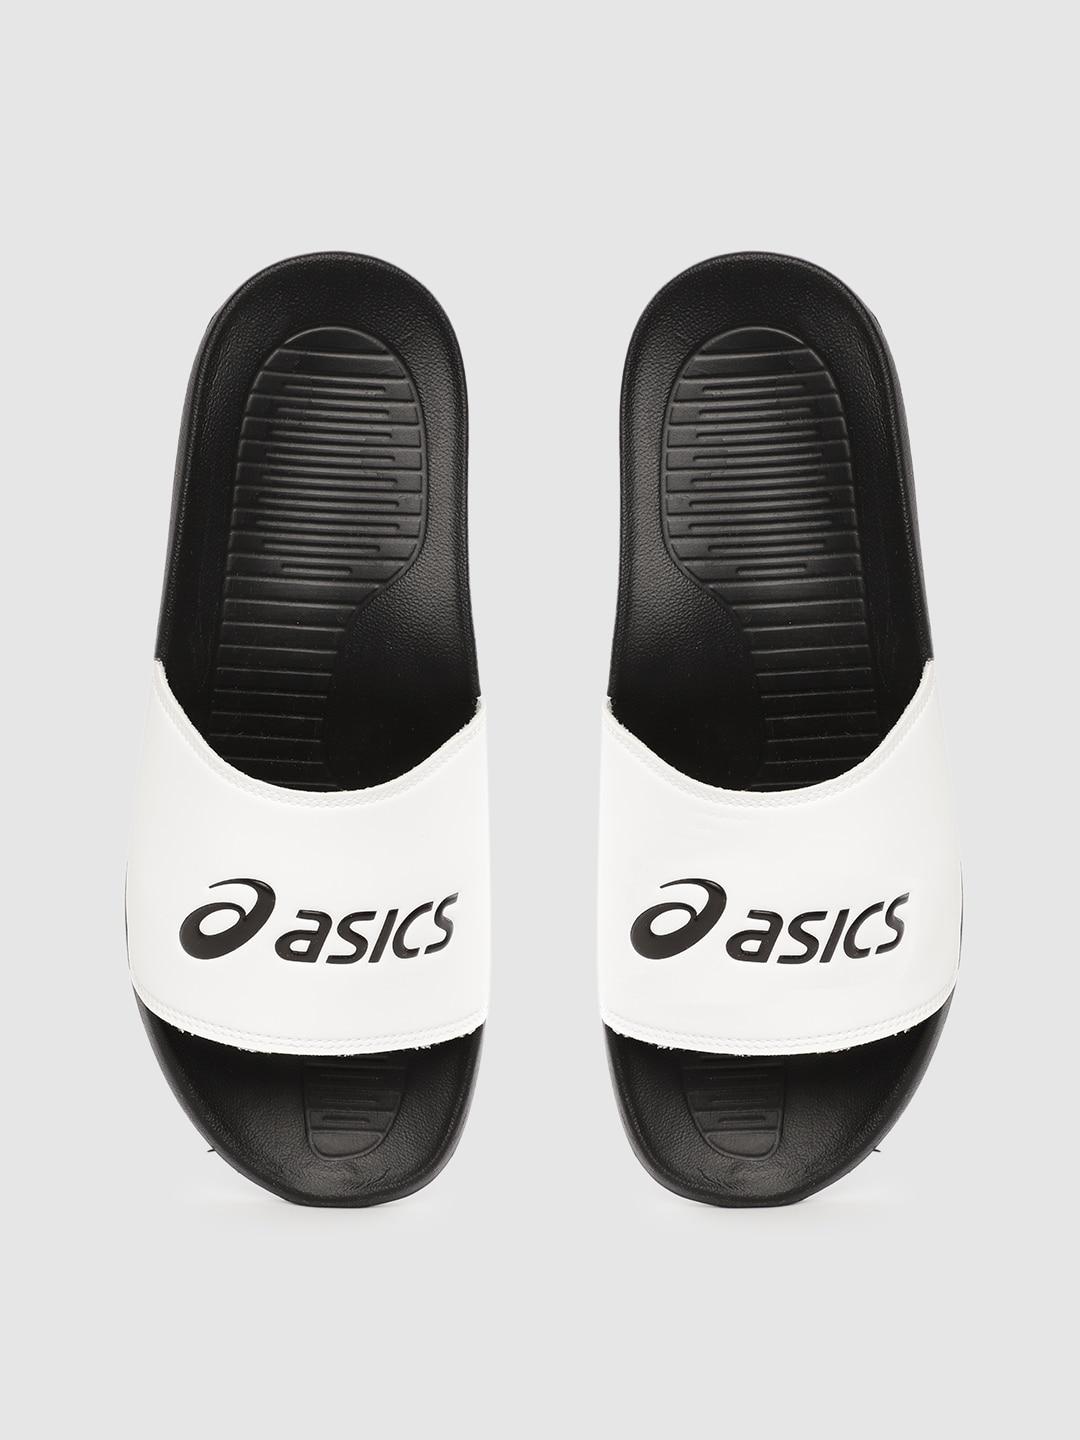 asics-unisex-white-&-black-as003-brand-logo-print-sliders